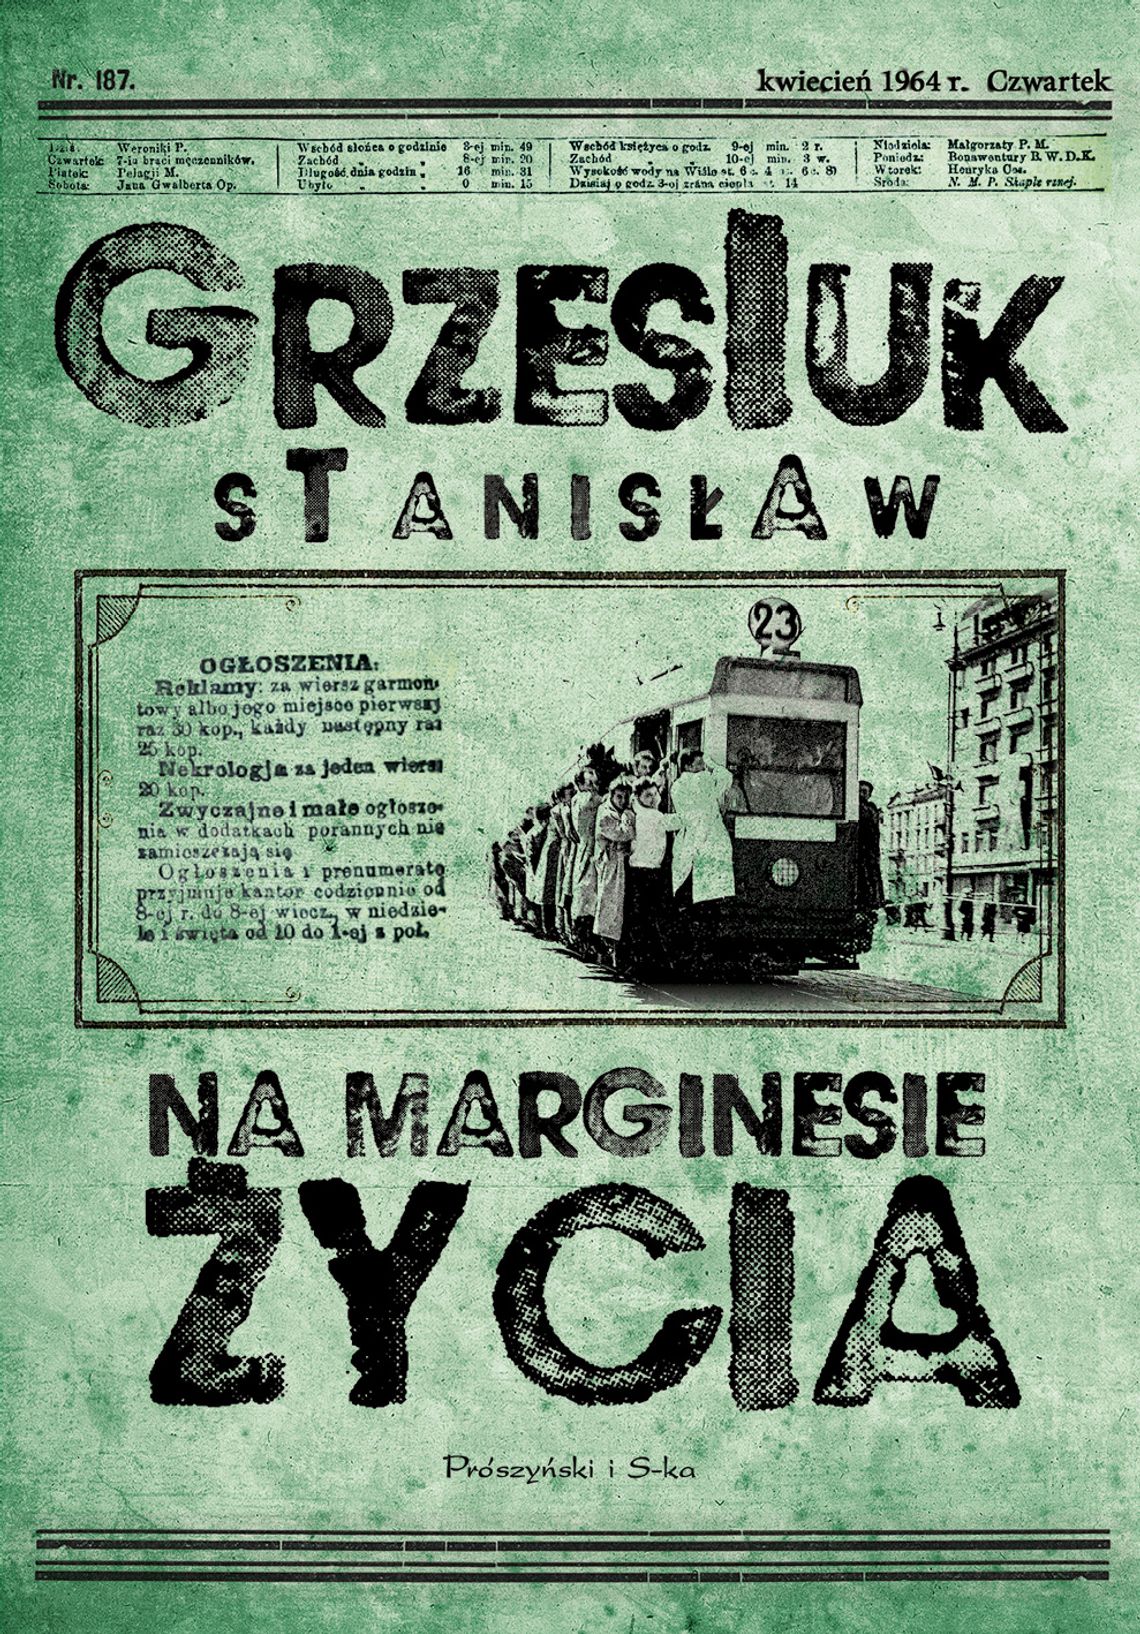 Stanisław Grzesiuk "Na marginesie życia"; wyd. Prószyński i S-ka